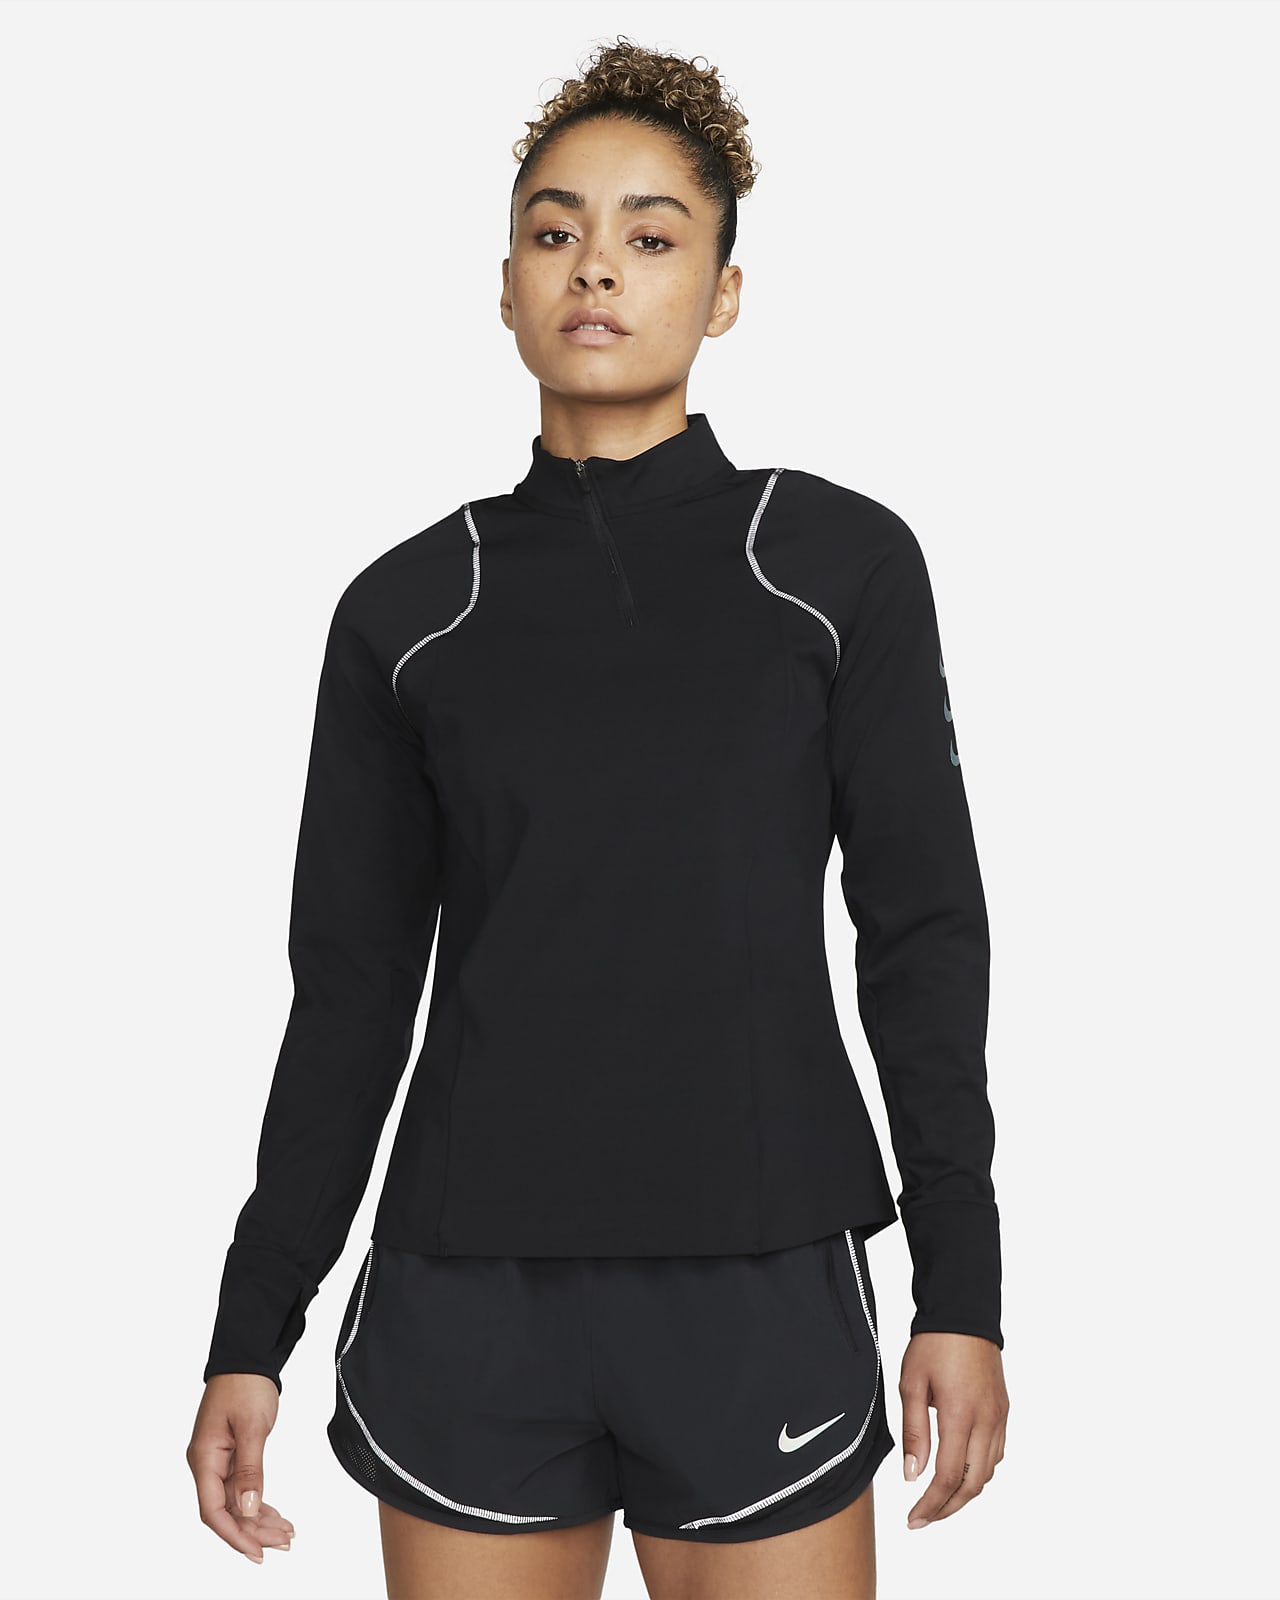 Damska środkowa warstwa ubioru do biegania Nike Dri-FIT ADV Run Division